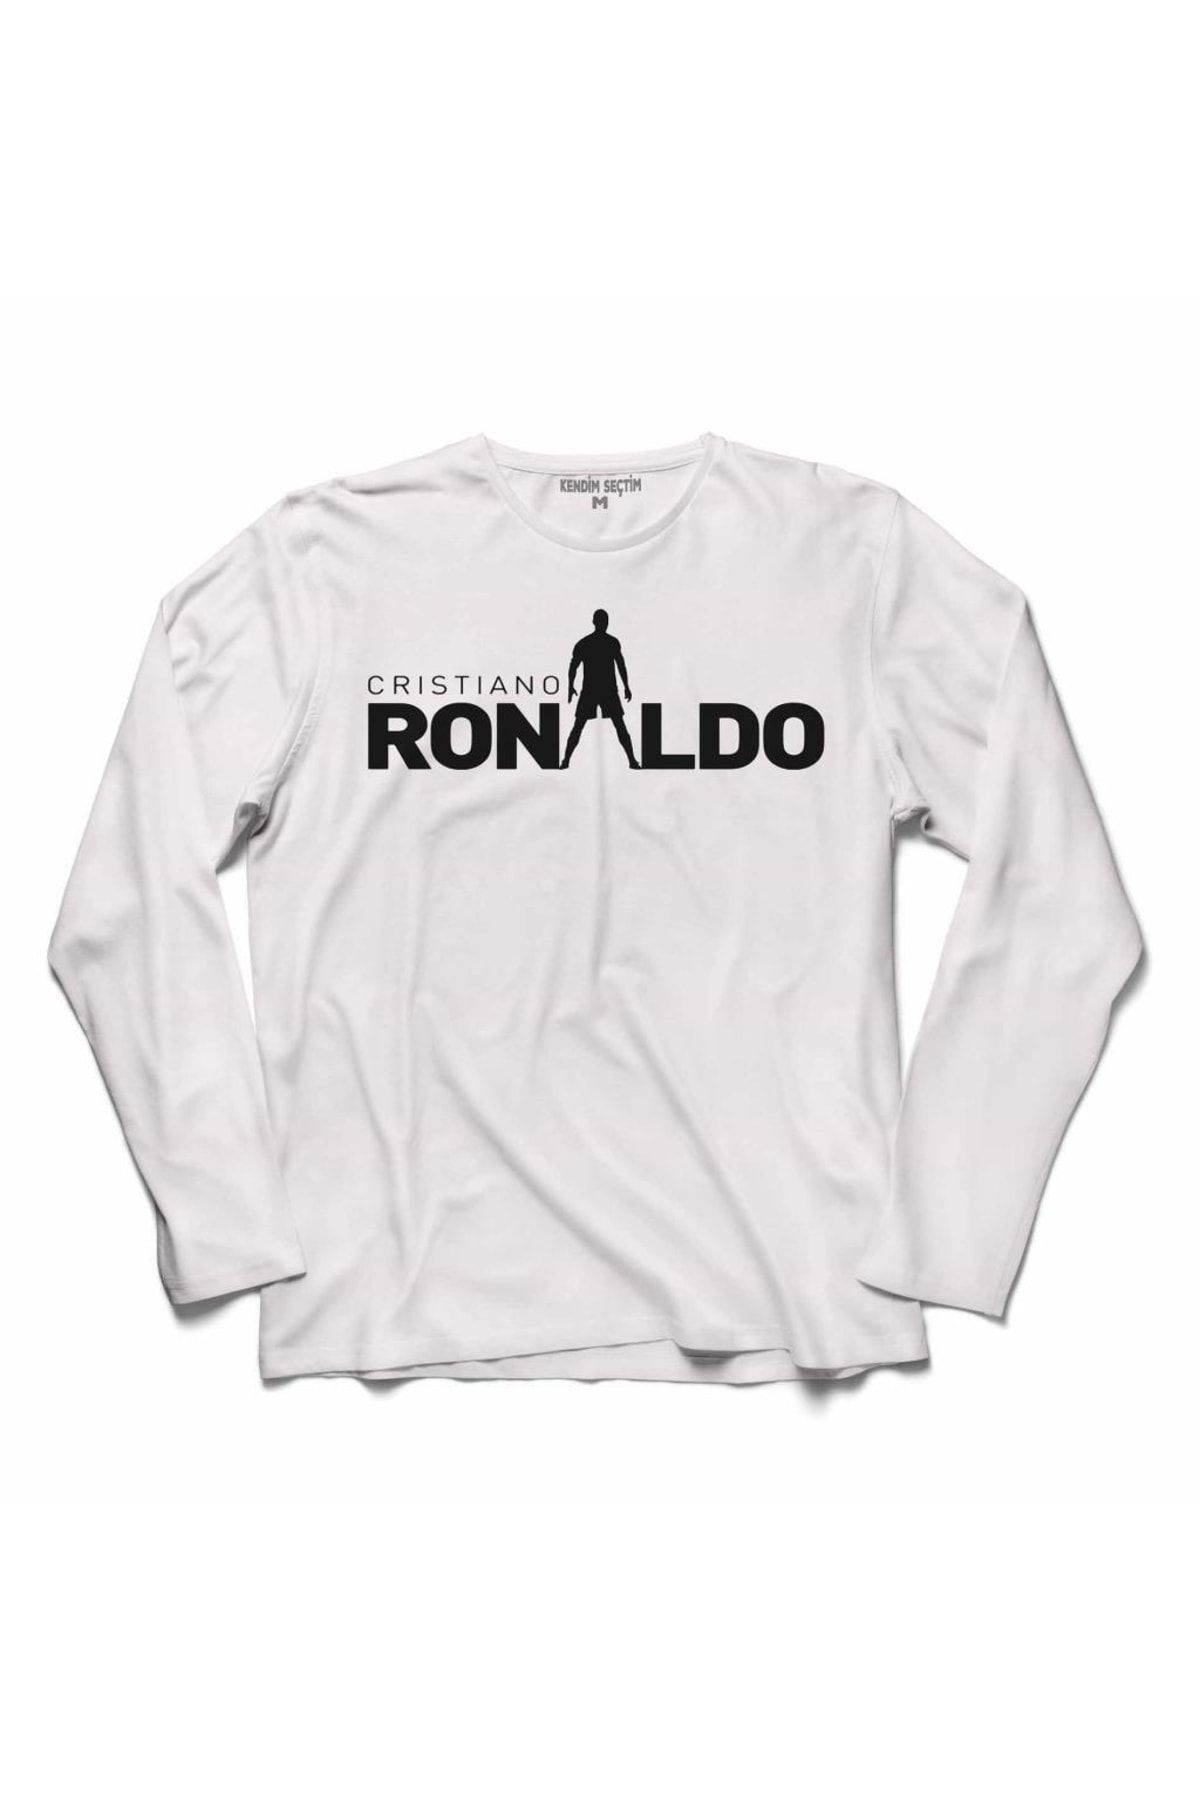 Kendim Seçtim Ronaldo Cr7 Juventus Forma Altın Top 2 Uzun Kollu Tişört